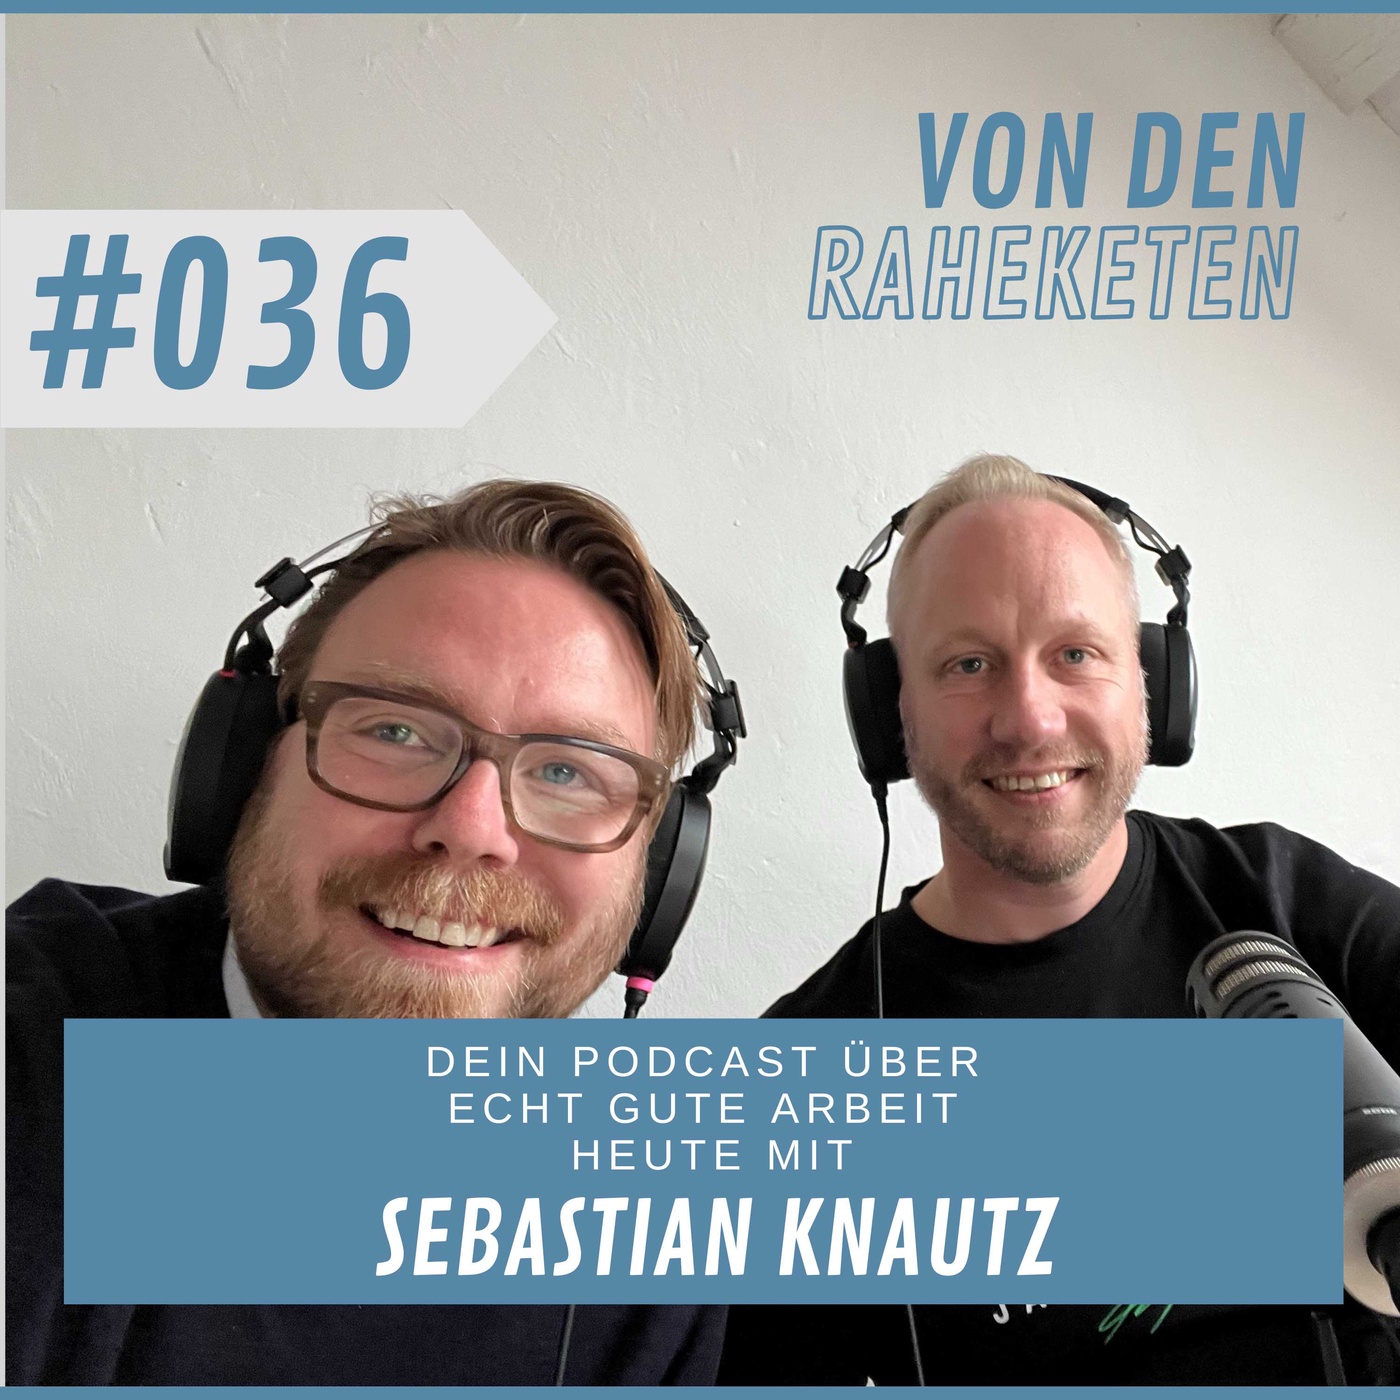 #036 Ein echt gutes Gespräch - heute mit Sebastian Knautz